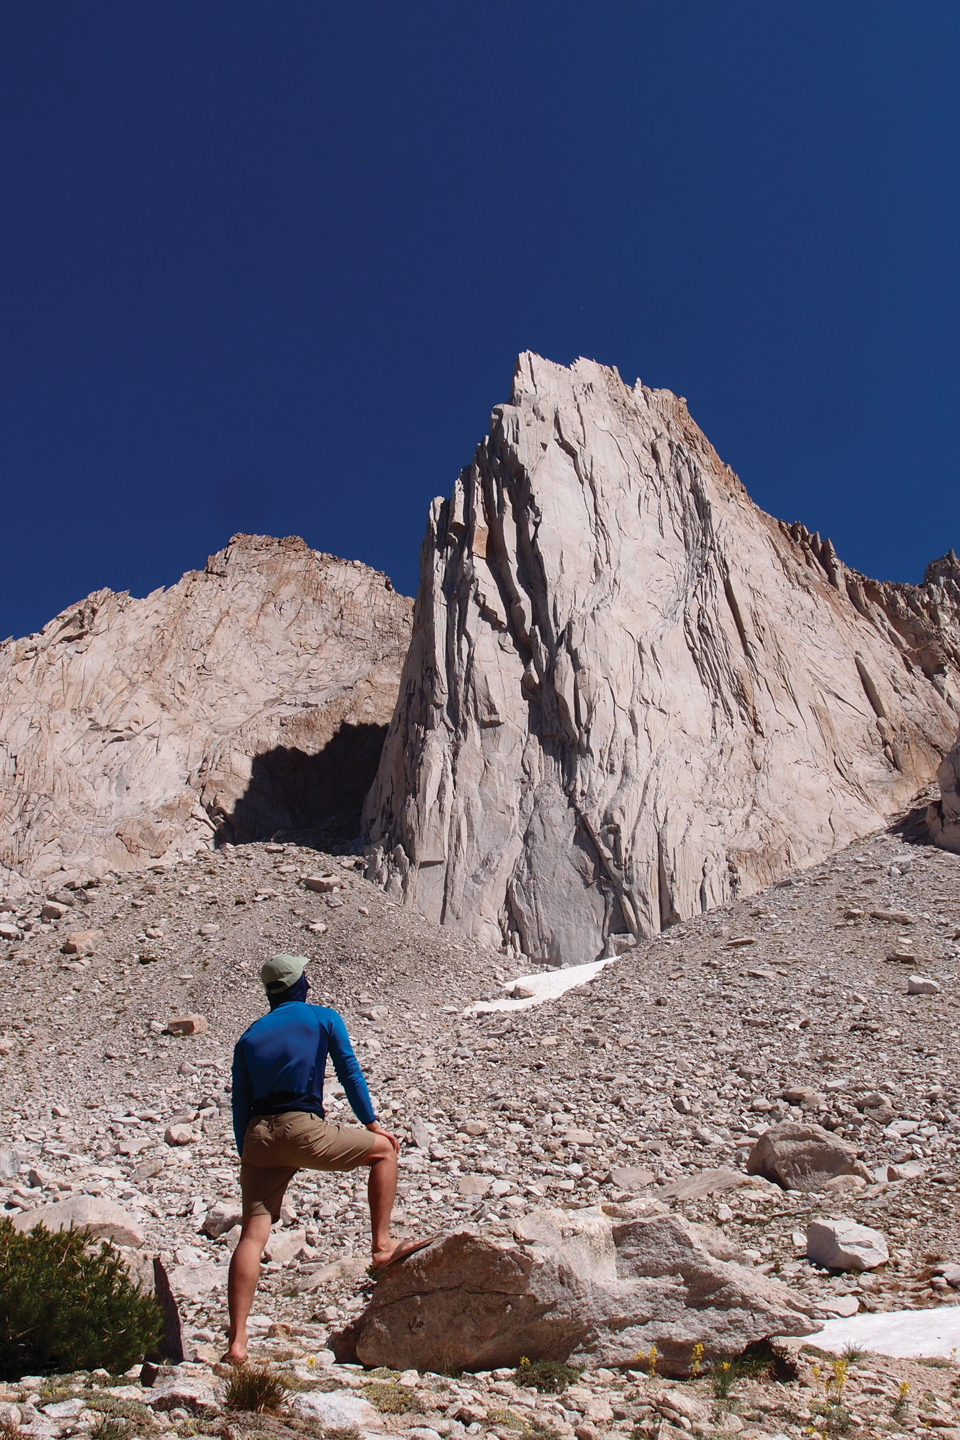 등반 전 베이스캠프에서 인크레더블 헐크와 루트를 관찰하고 있다. 새하얀 바위가 주변과 대조된다.